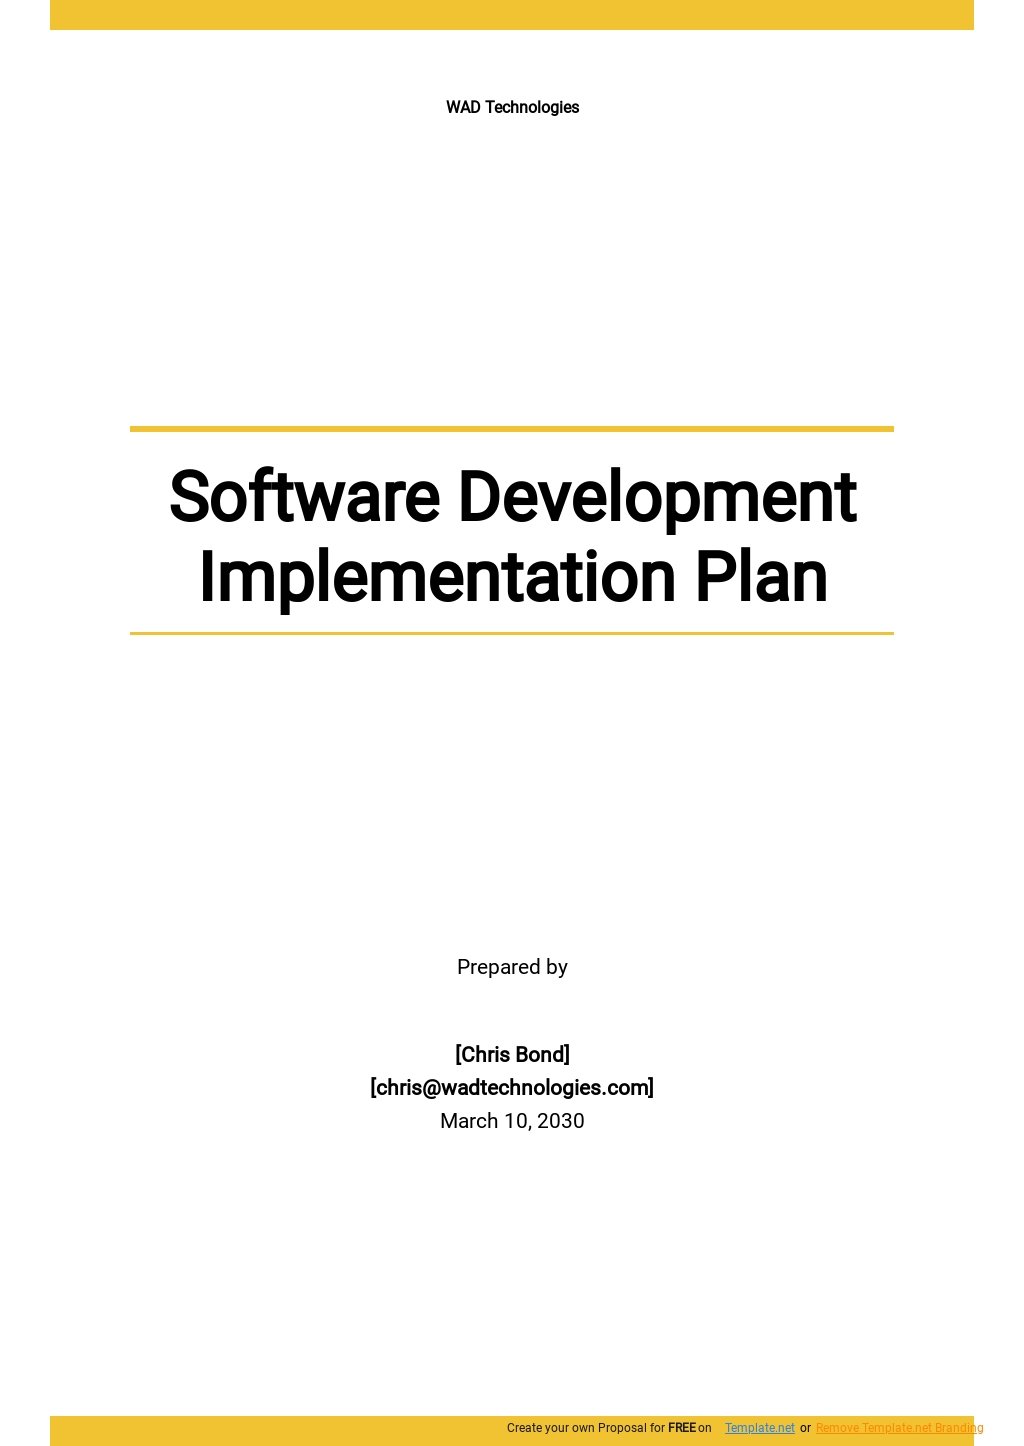 Software Development Implementation Plan Template.jpe